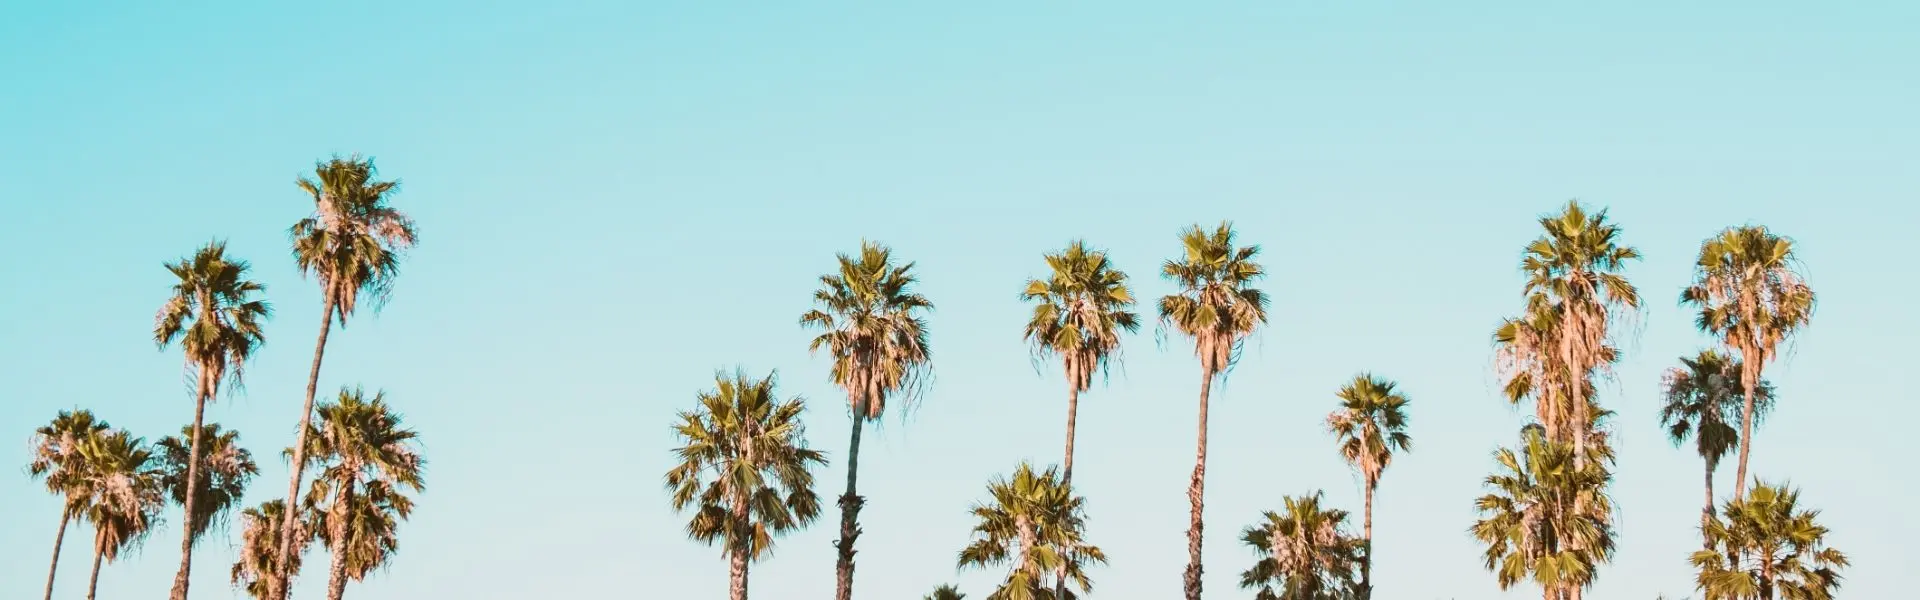 A line of palm trees on a blue sky - Corey Agopian via Unsplash